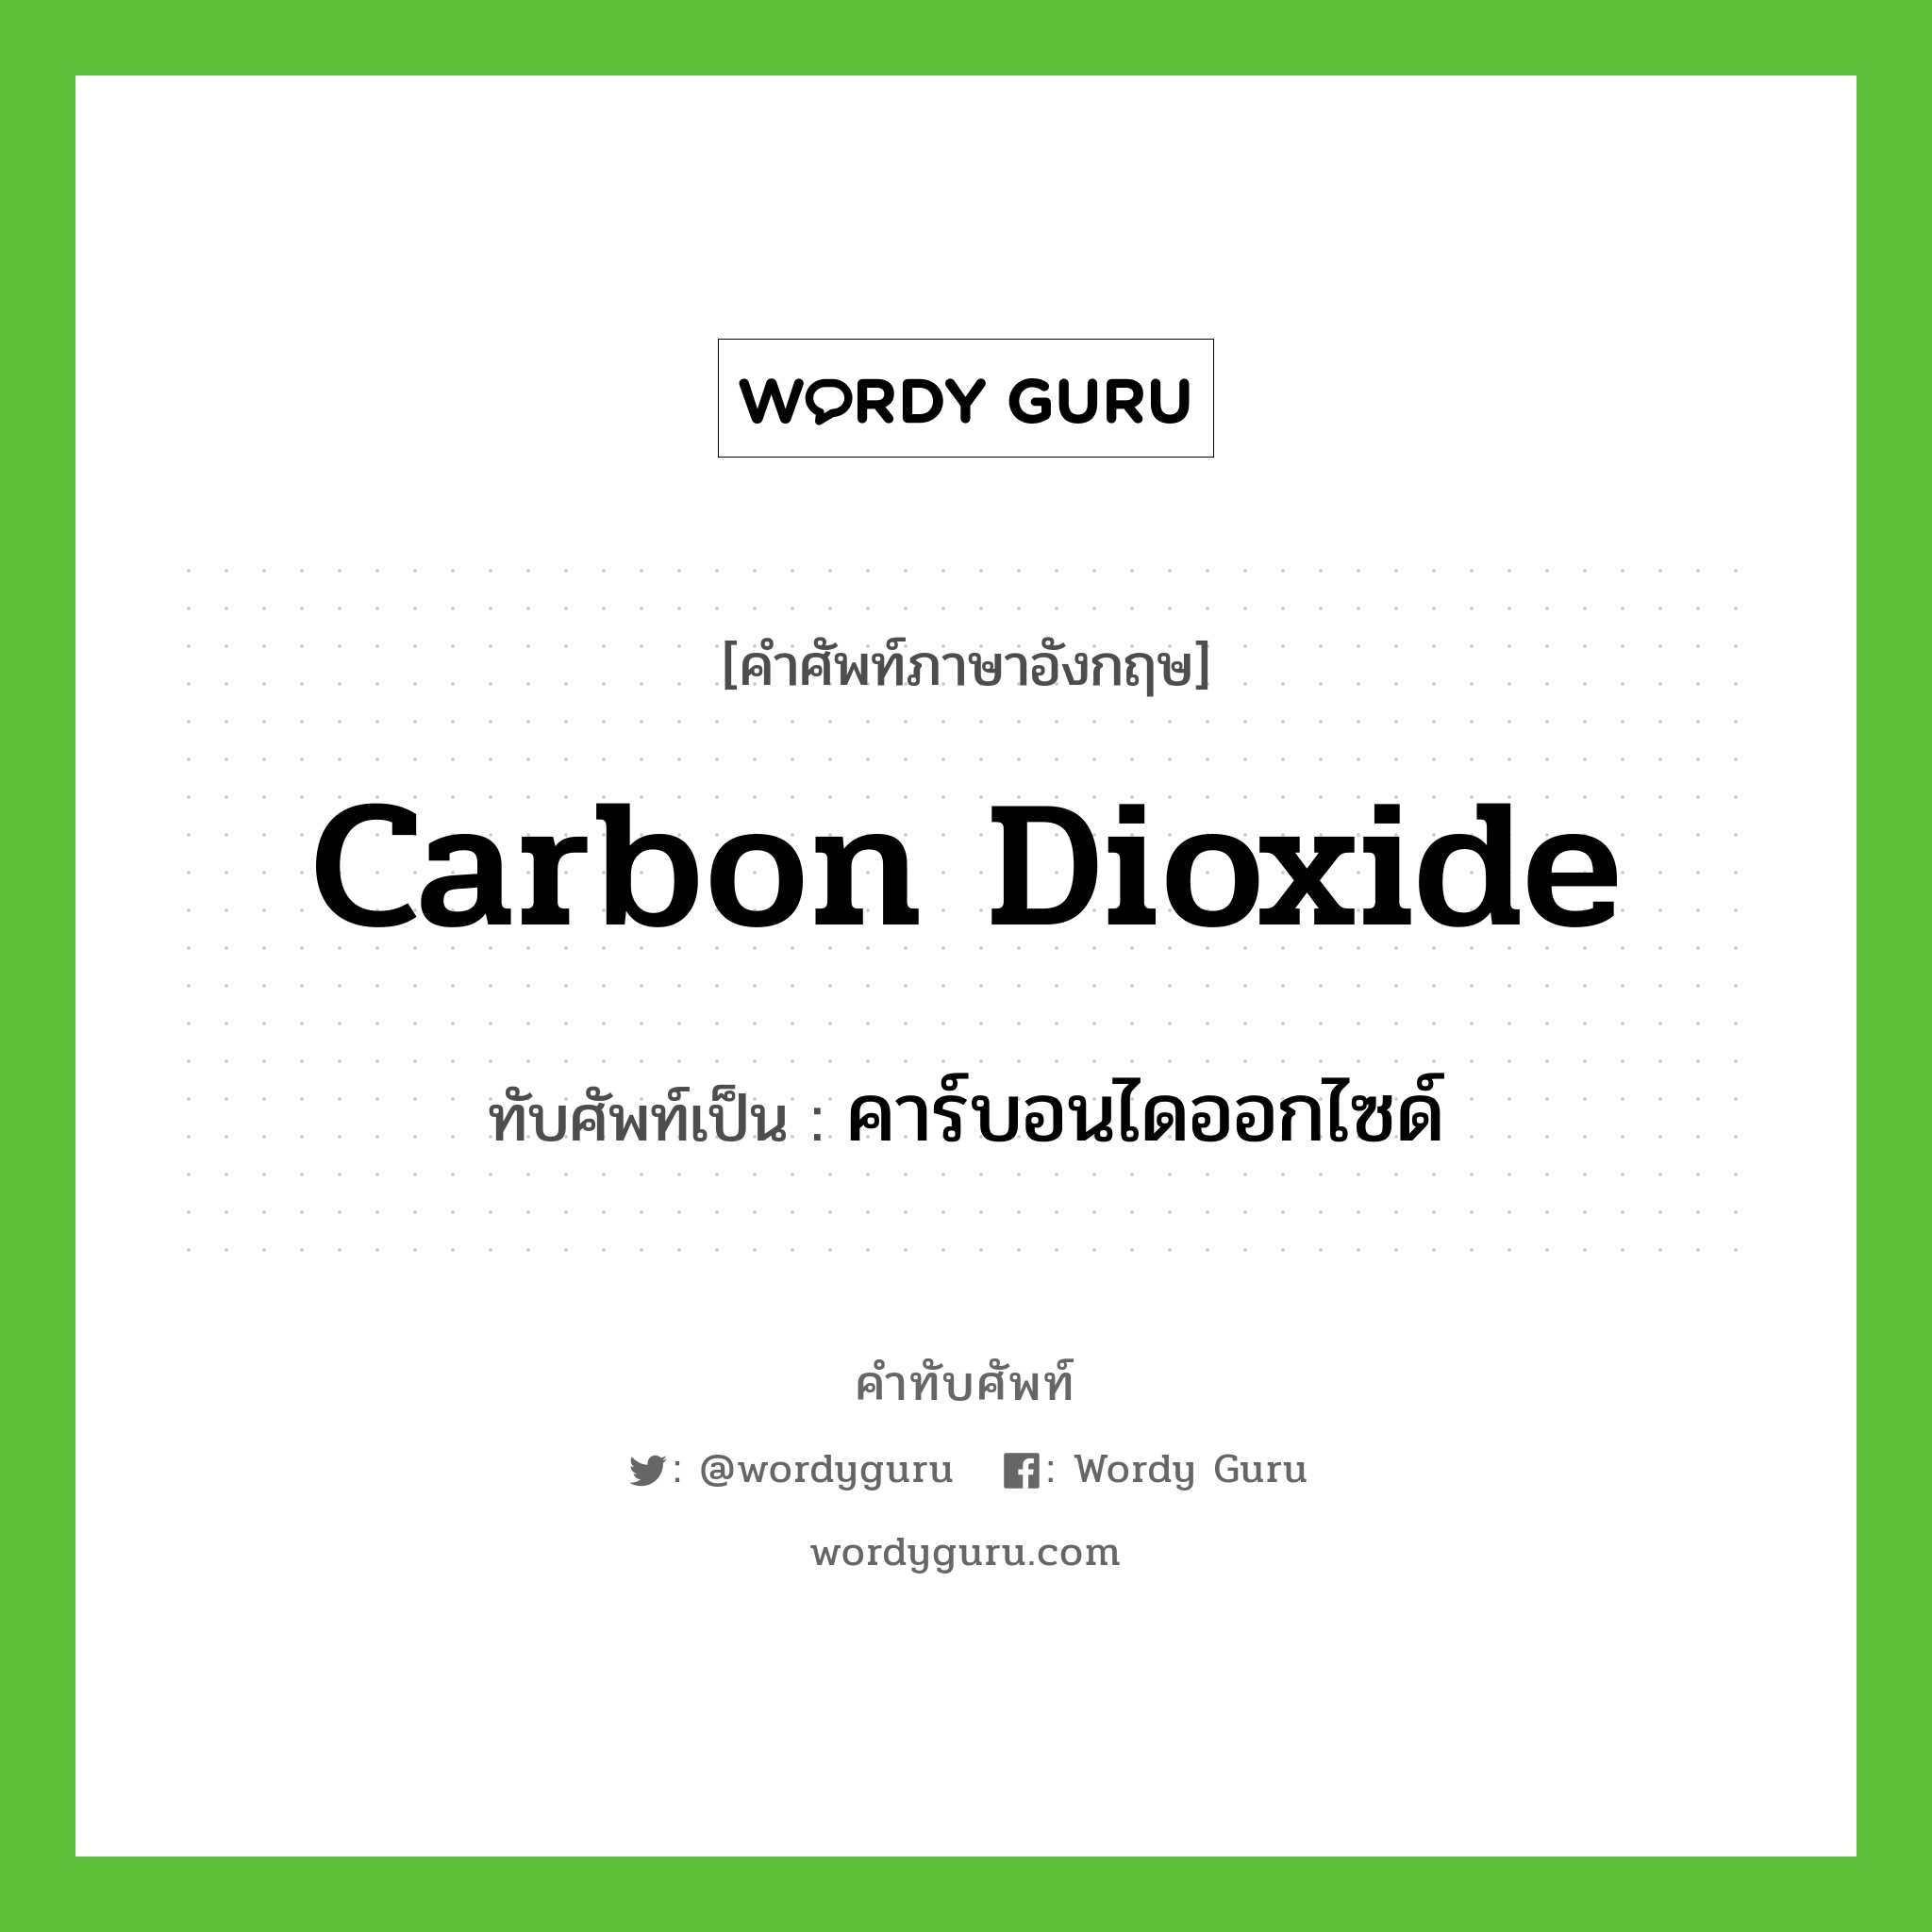 คาร์บอนไดออกไซด์ เขียนอย่างไร?, คำศัพท์ภาษาอังกฤษ คาร์บอนไดออกไซด์ ทับศัพท์เป็น carbon dioxide